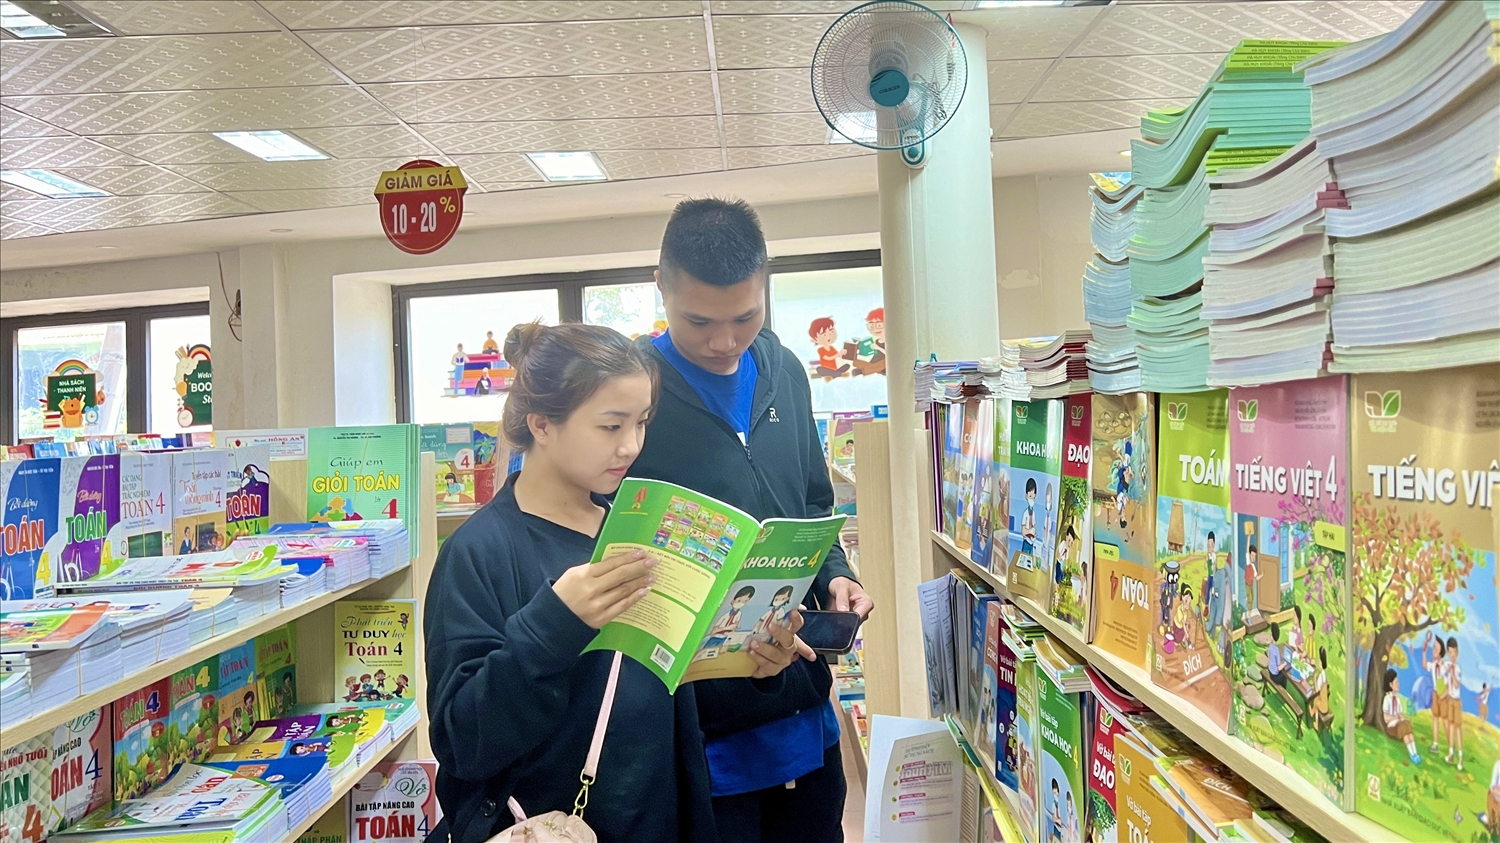 Sách giáo khoa giảm giá giúp phụ huynh, học sinh vùng cao có thể mua sách thuận tiện hơn